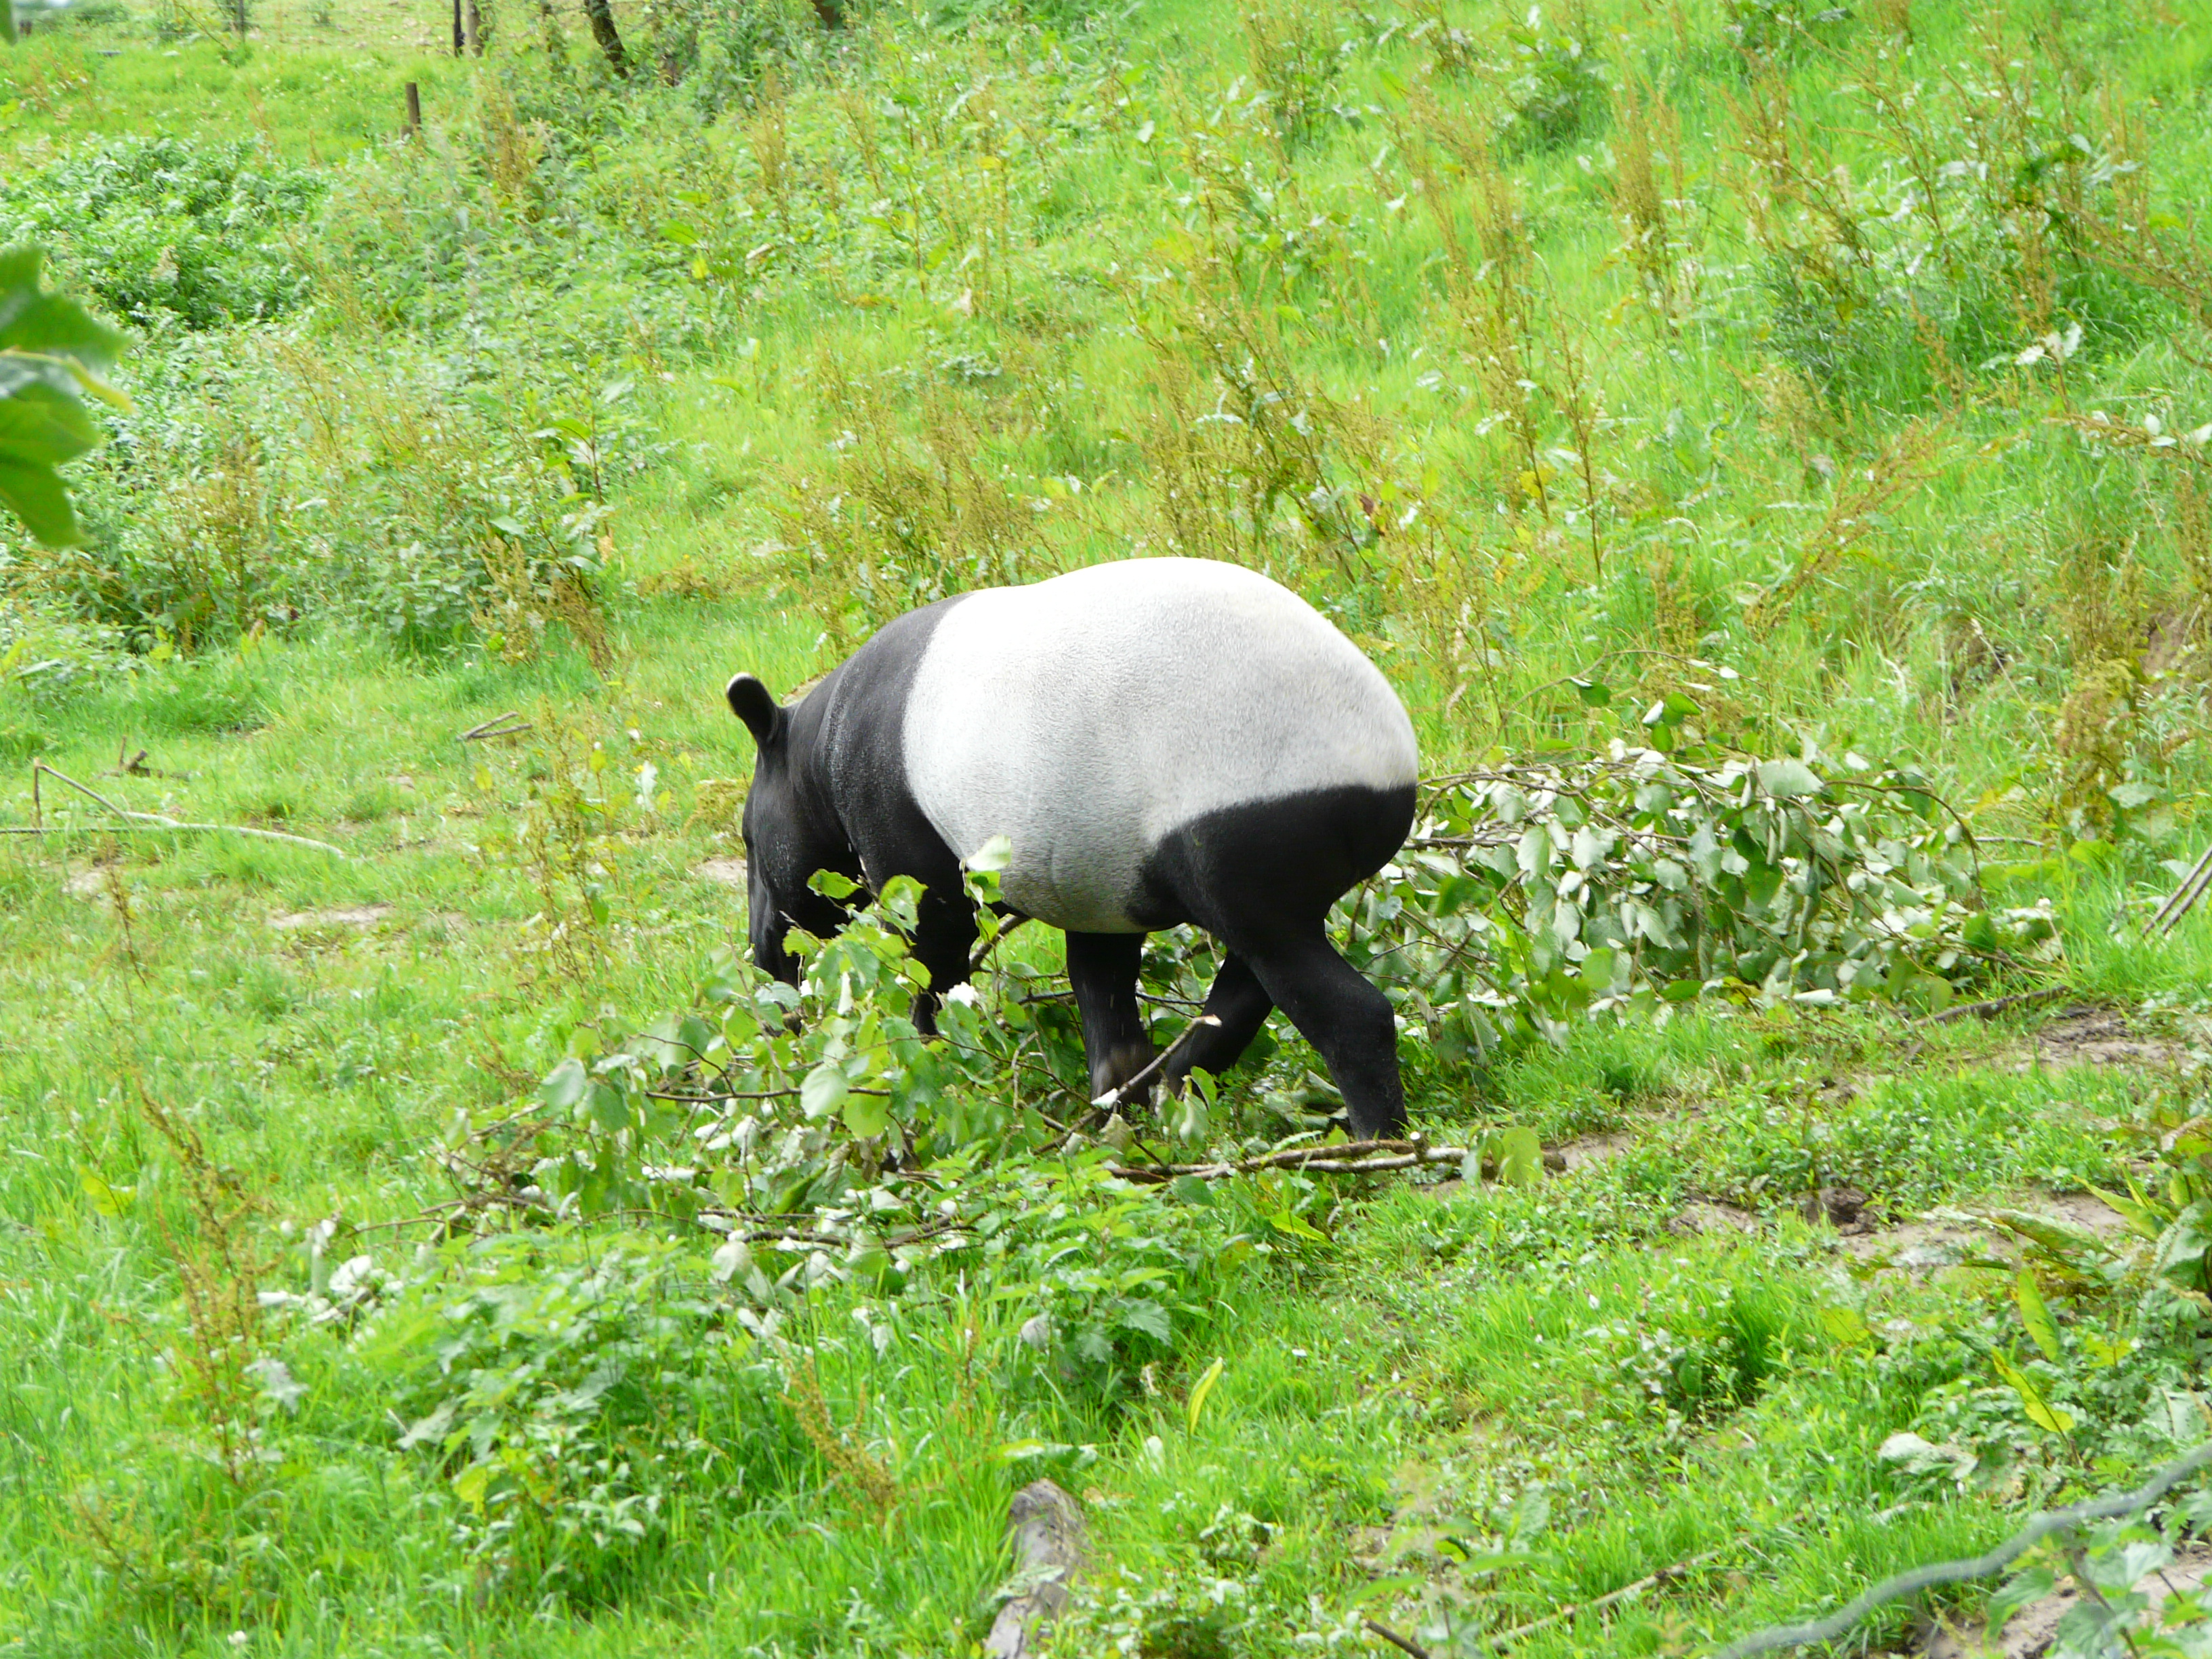 Le coloris bicolore du tapir de Malaisie sert au camouflage. Elle casse la silhouette de l'animal, ce qui lui permet d'échapper aux prédateurs. On retrouve la même tonalité de couleurs chez le panda géant. © Patrick Straub